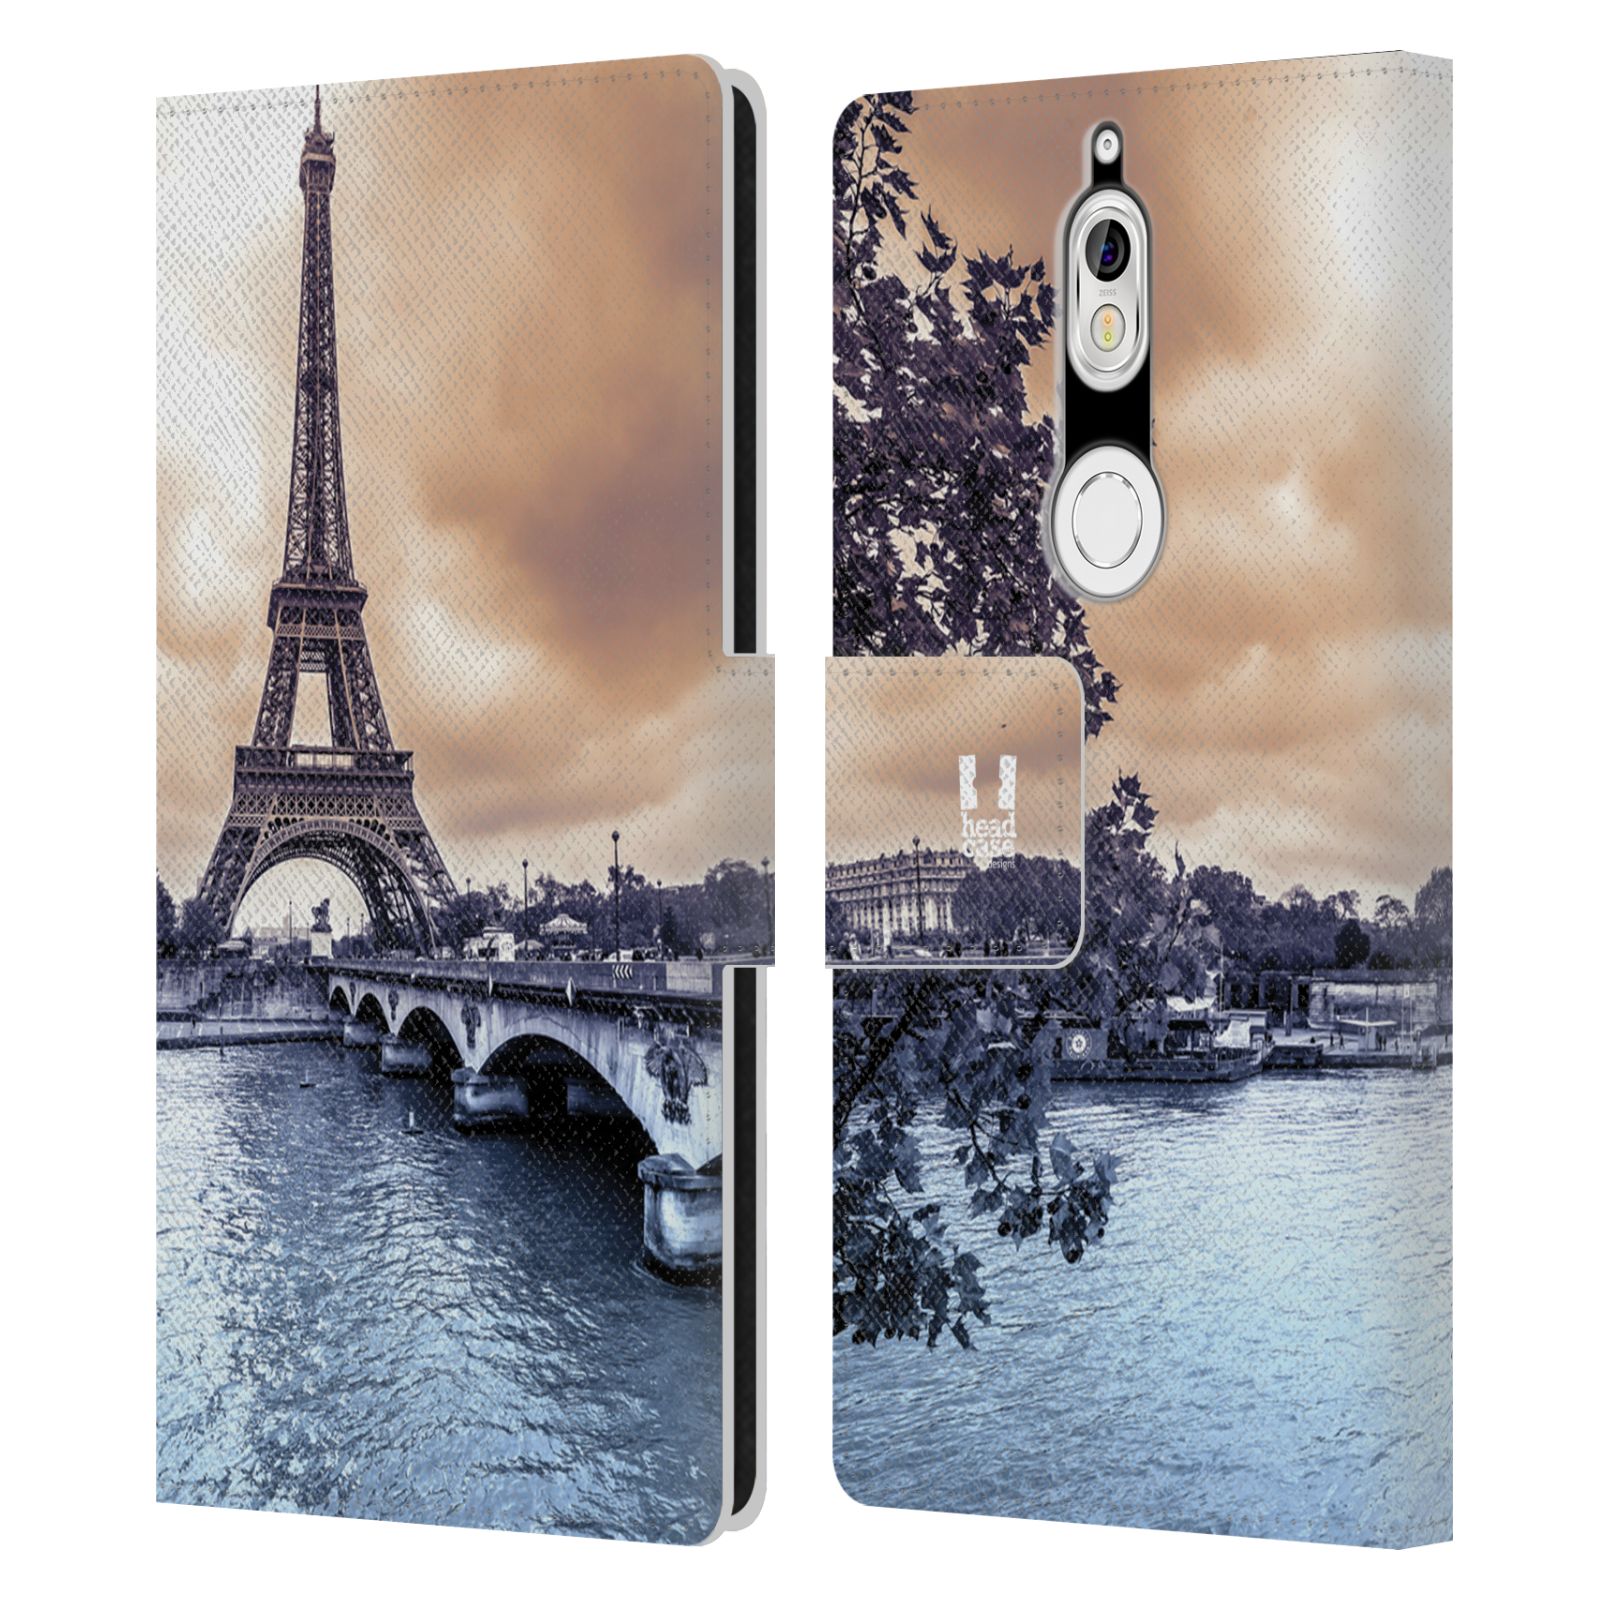 Pouzdro na mobil Nokia 7 - Head Case - Paříž Eiffelova věž